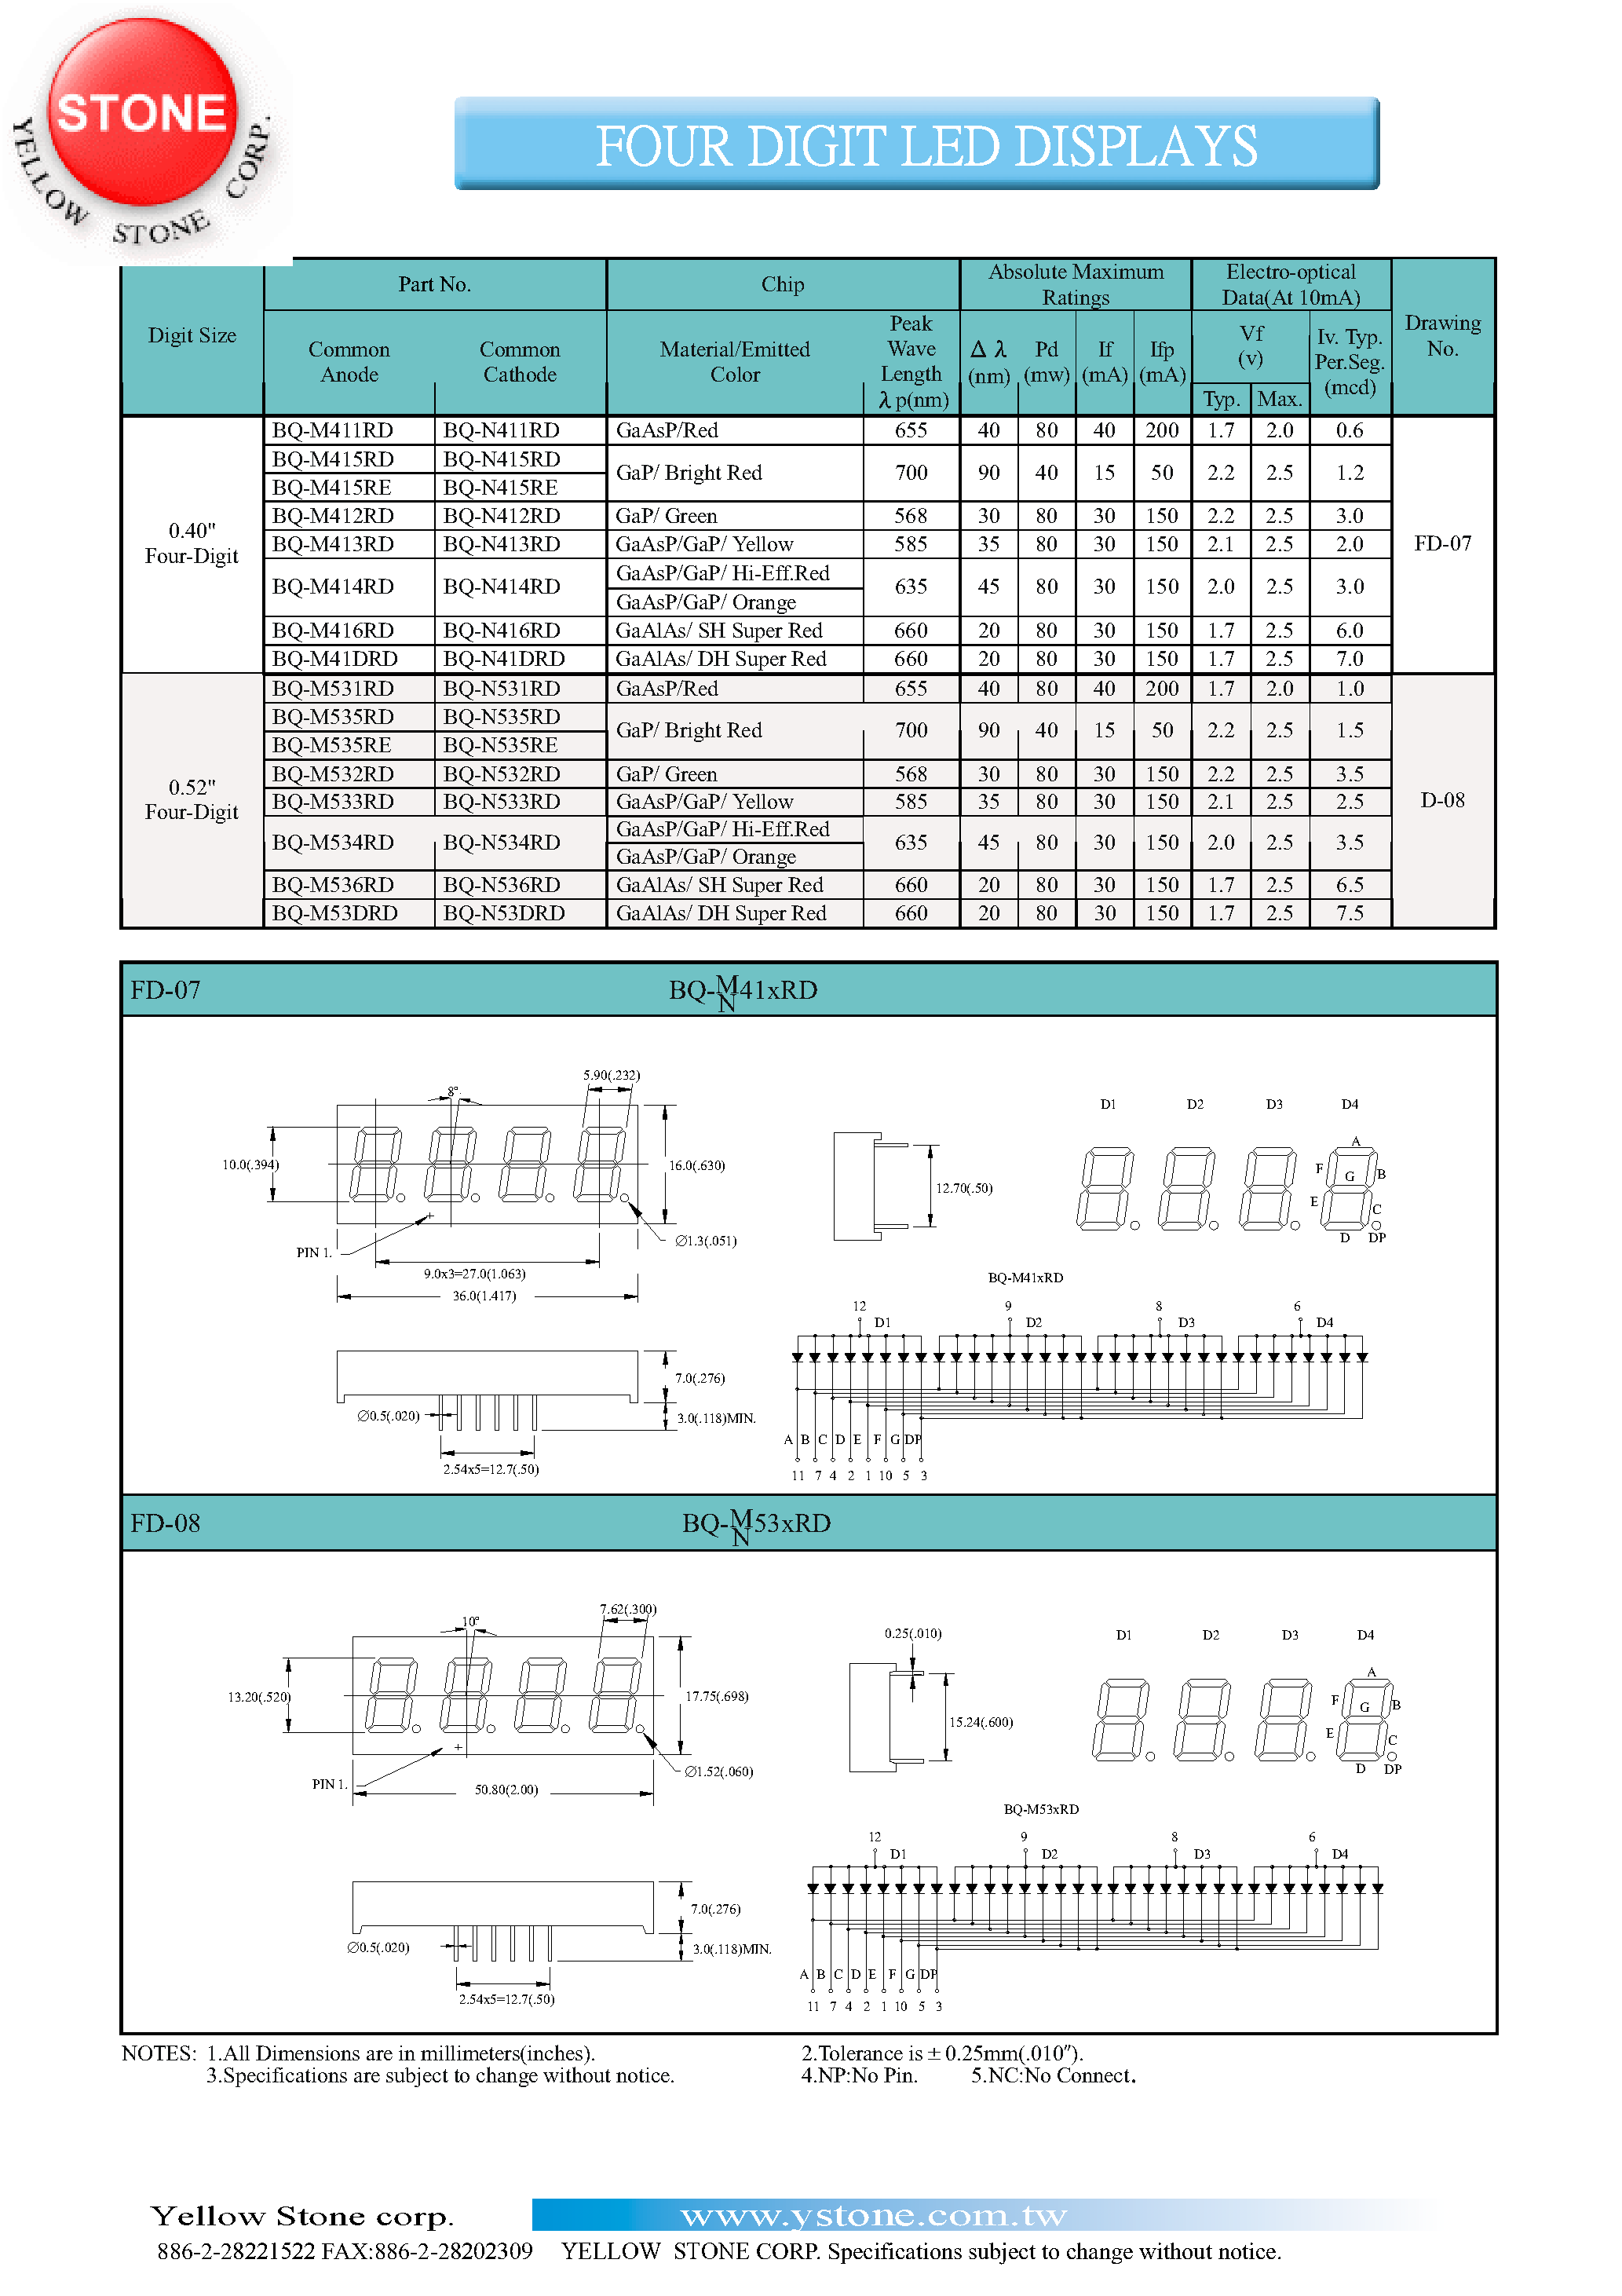 Даташит BQ-M412RD - FOUR DIGIT LED DISPLAYS страница 1